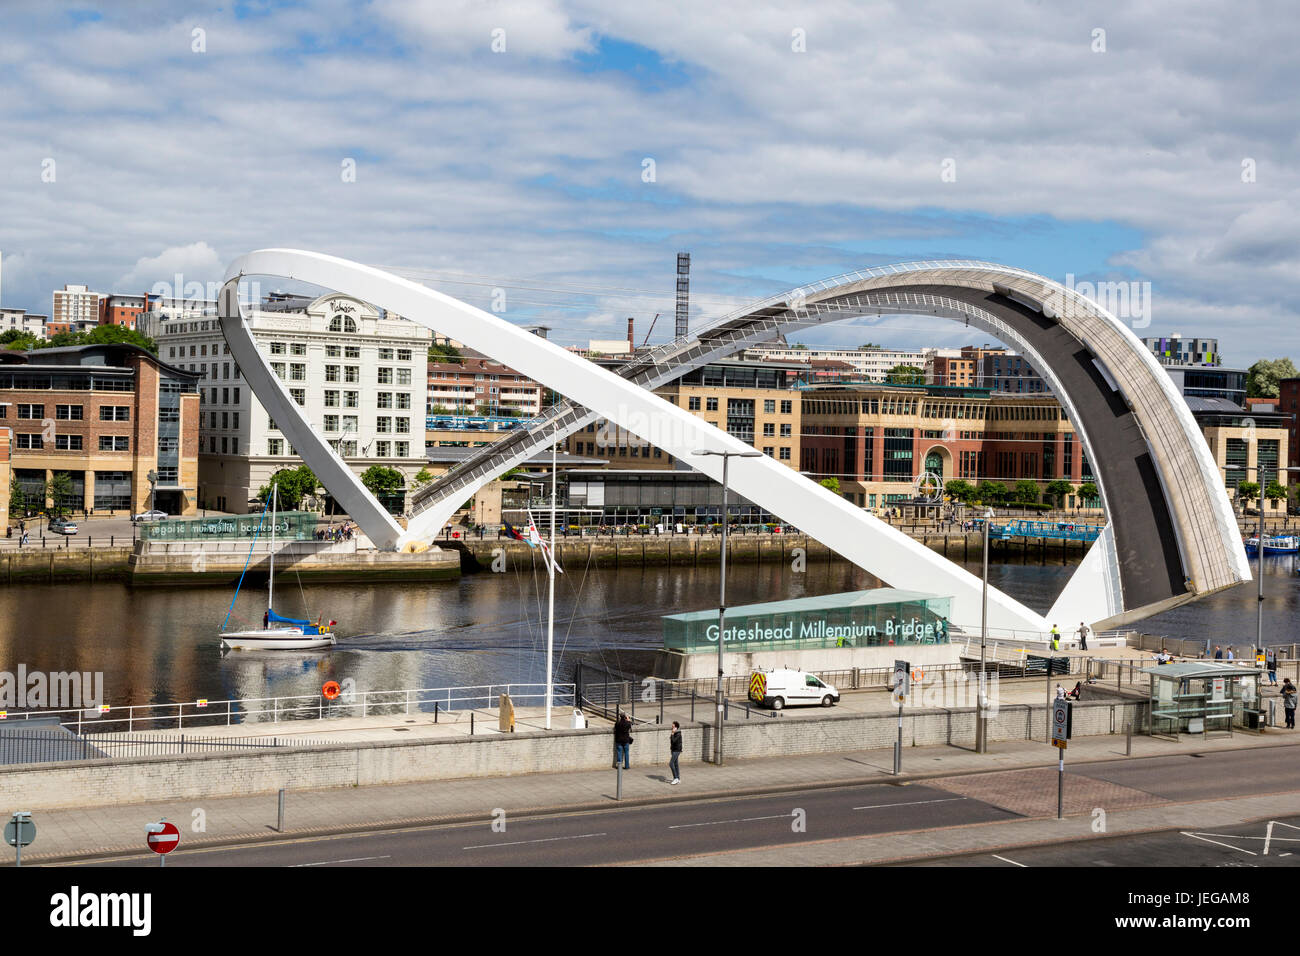 Newcastle-upon-Tyne, Inglaterra, Reino Unido. Puente del milenio de Gateshead en rotación de medio día sobre el río Tyne. Foto de stock